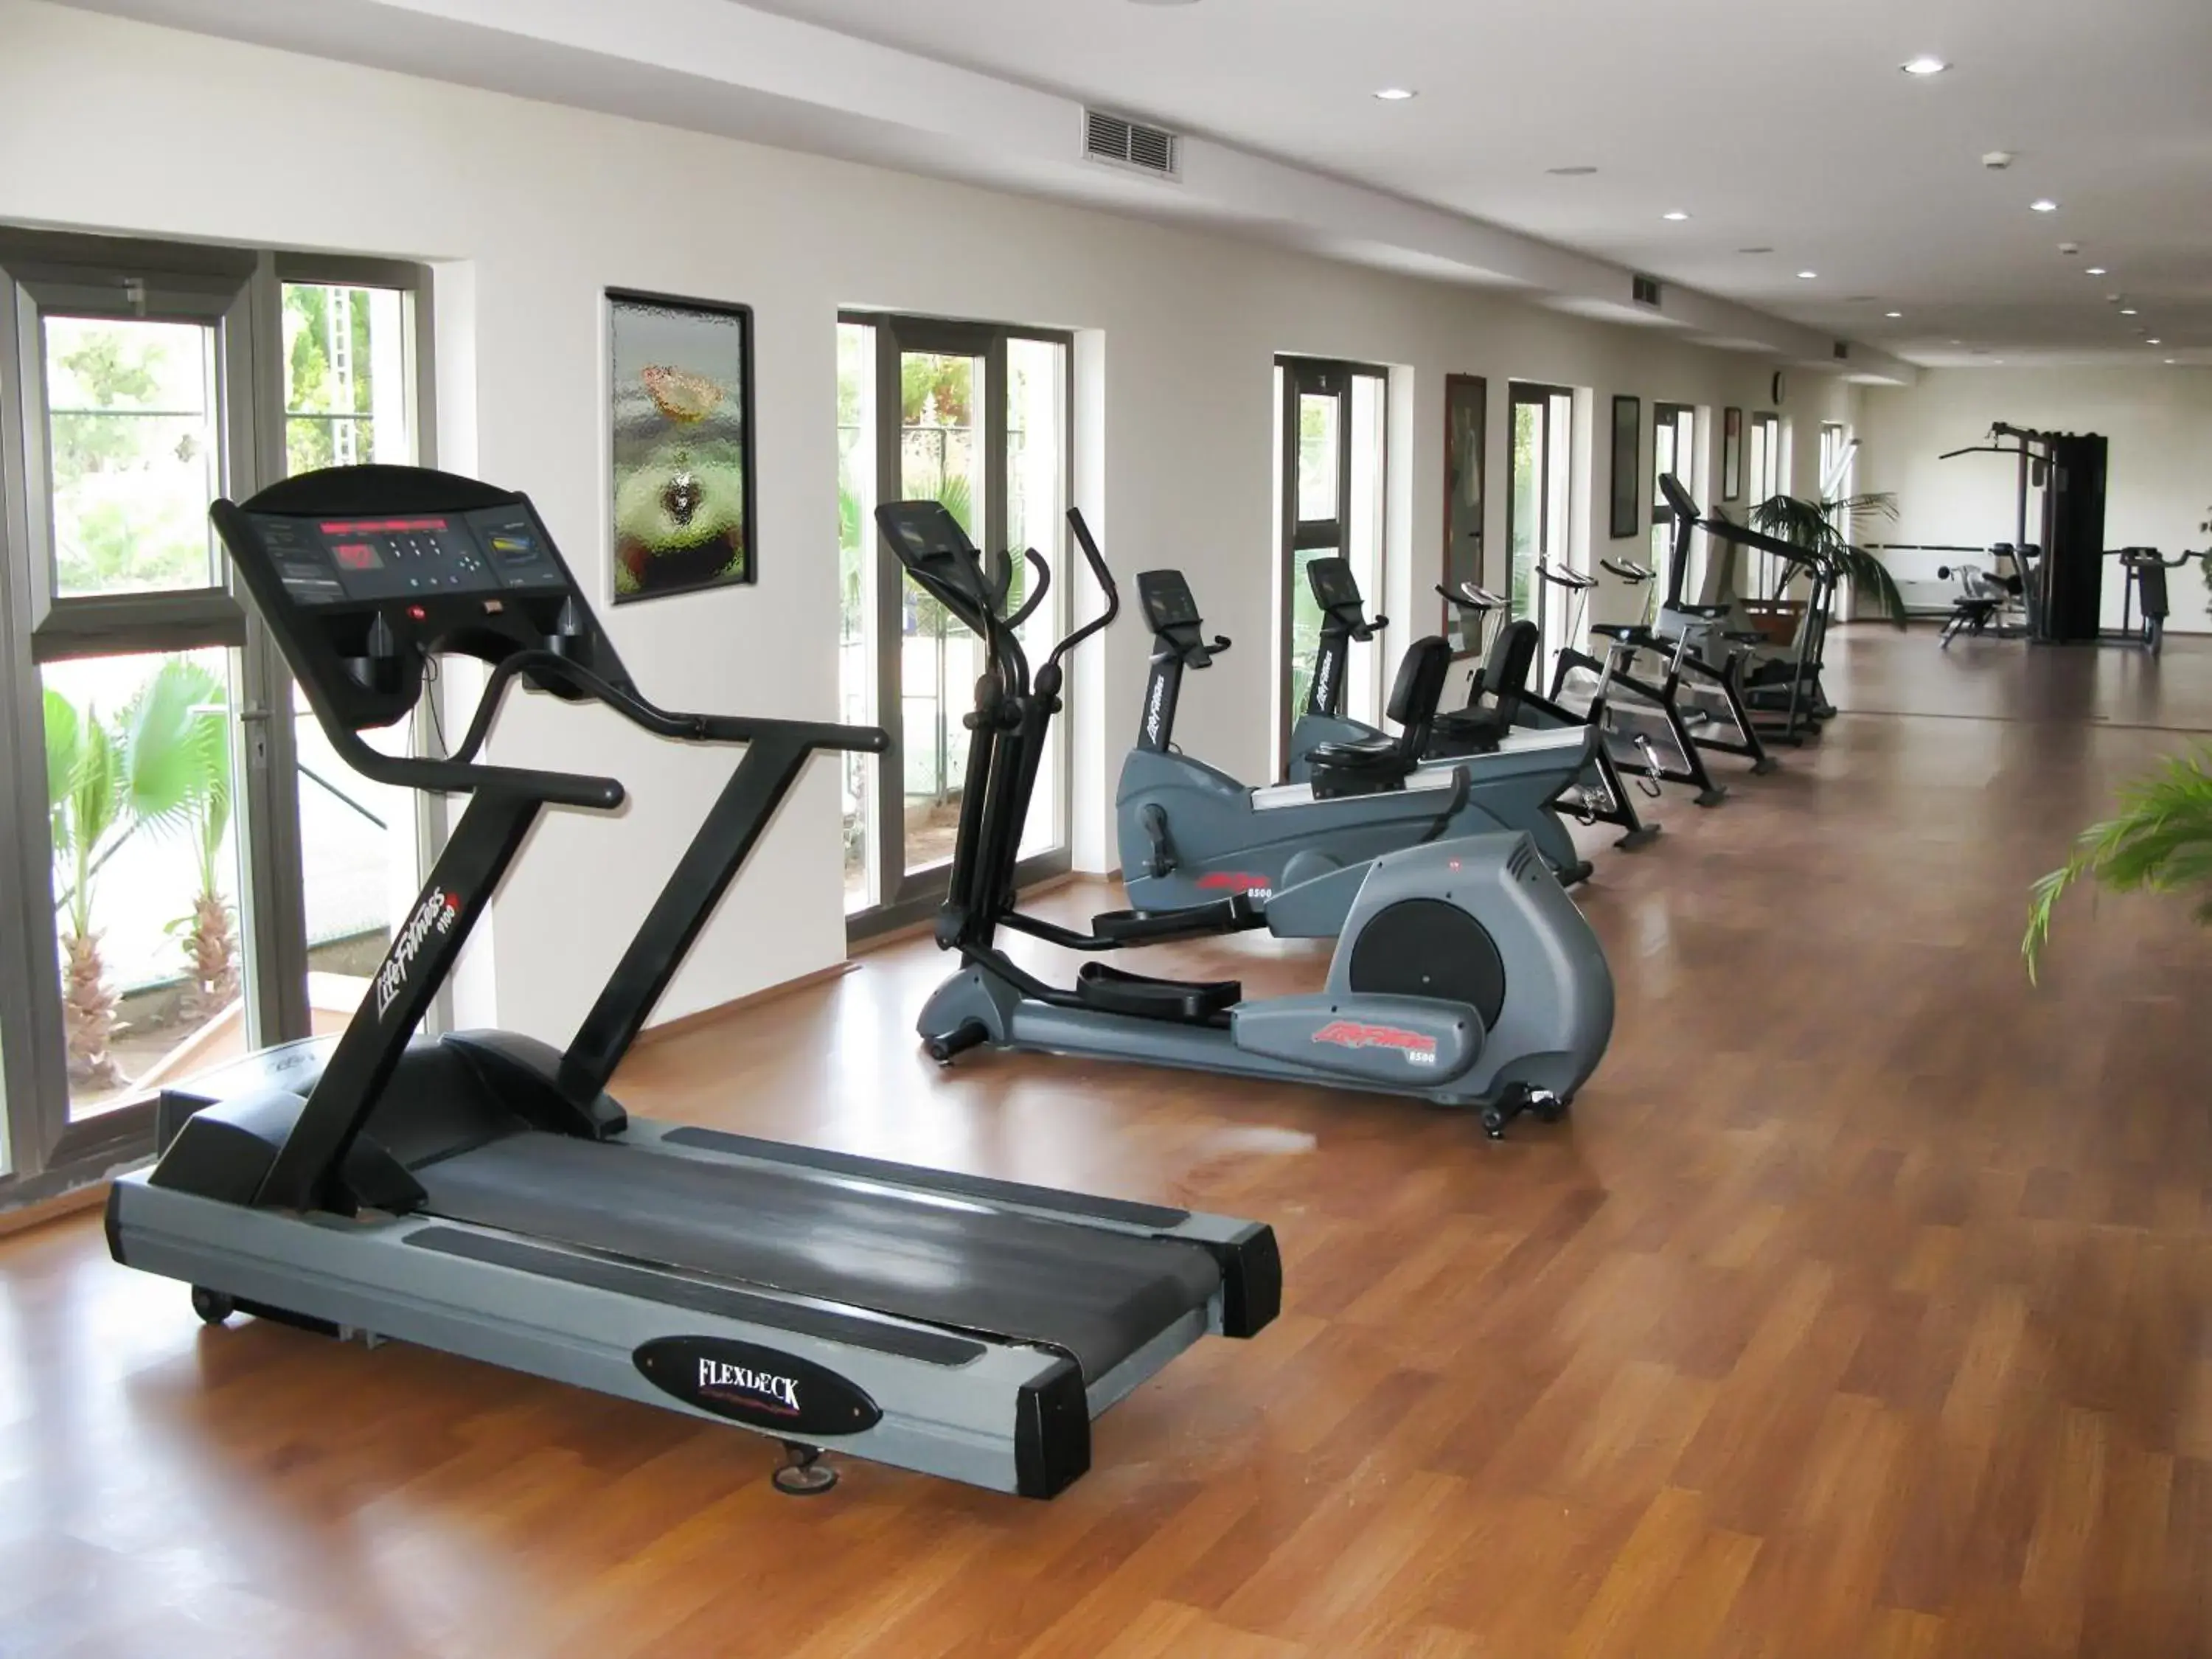 Fitness centre/facilities, Fitness Center/Facilities in Adora Golf Resort Hotel